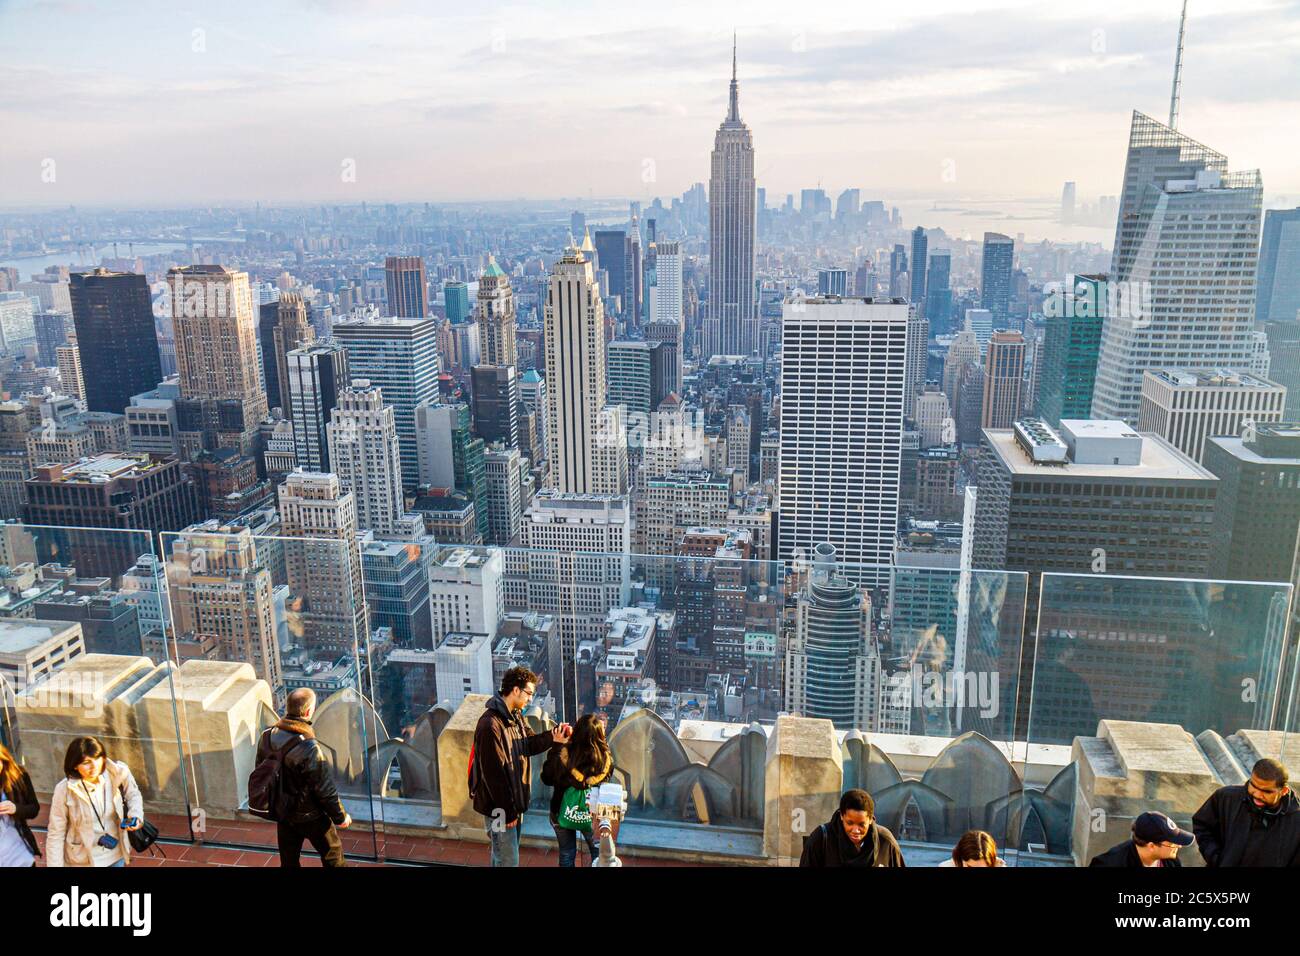 New York City, NYC NY Manhattan, Rockefeller Center Aussichtsplattform auf der Oberseite des Felsens, Skyline der Stadt Wolkenkratzer Südblick Besucher des Empire State Building Stockfoto